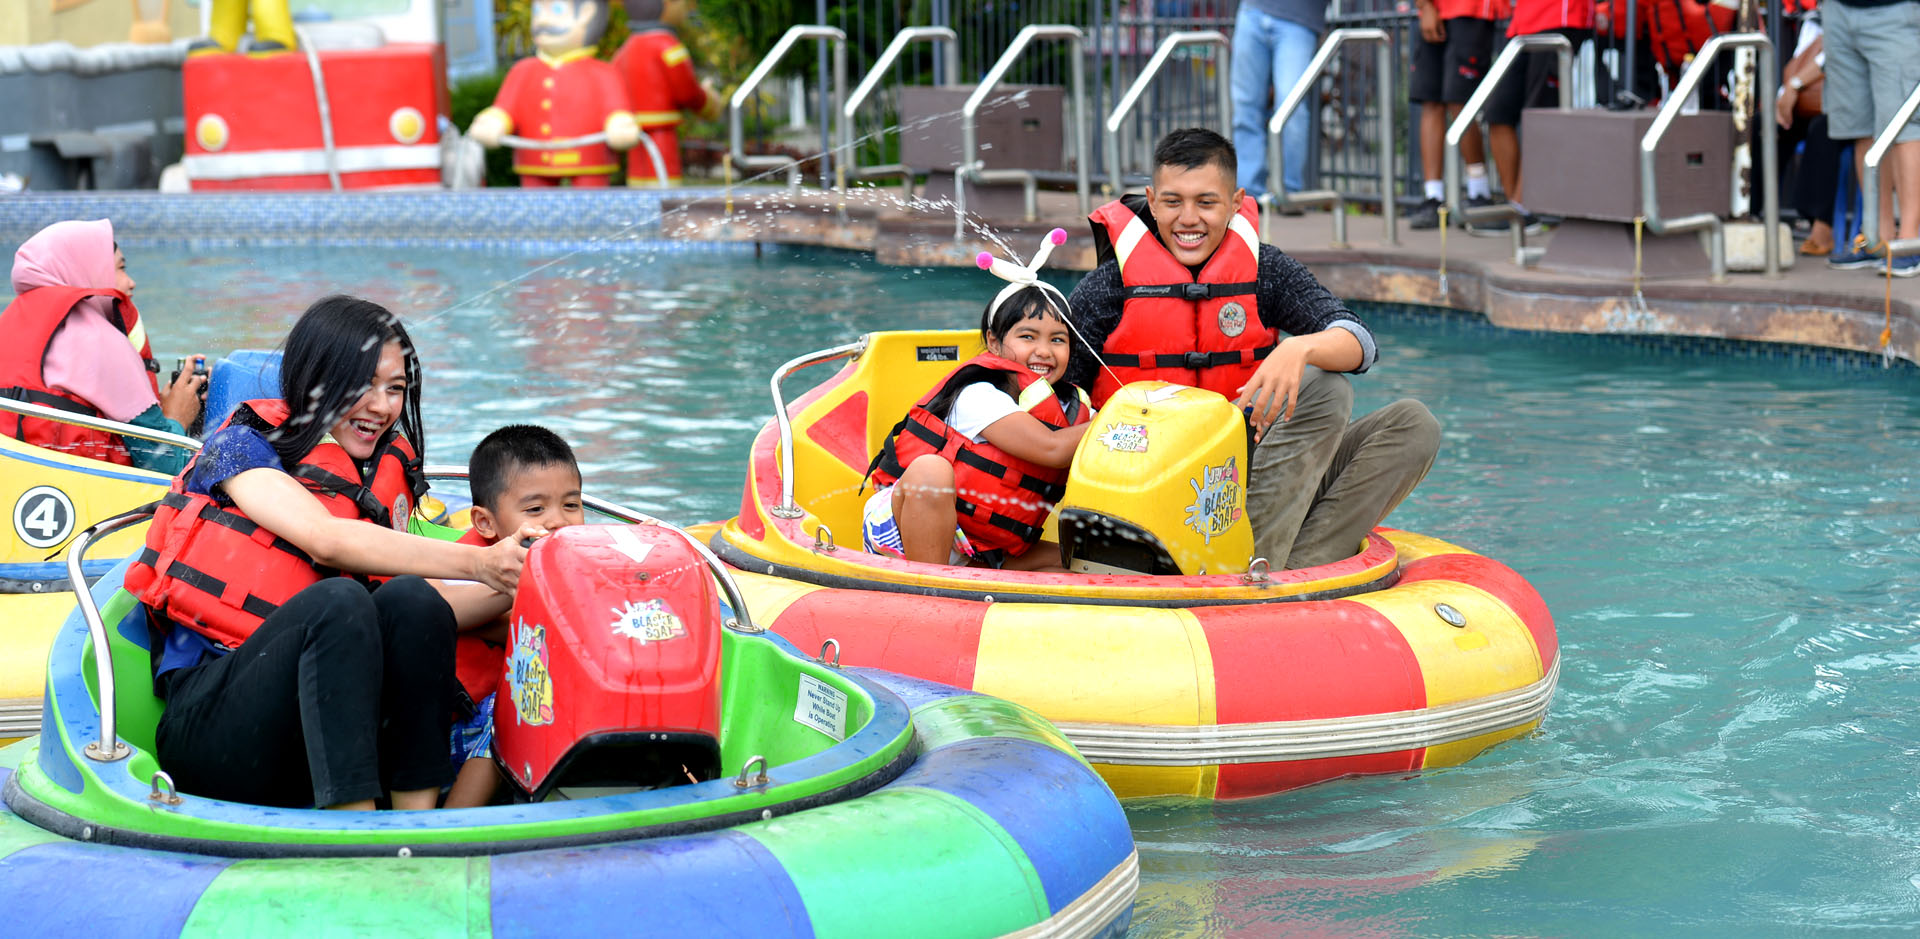 Kid Fun Park, rekomendasi tempat wisata di Jogja yang cocok untuk keluarga dan anak-anak. (Dok kidsfun.co.id)